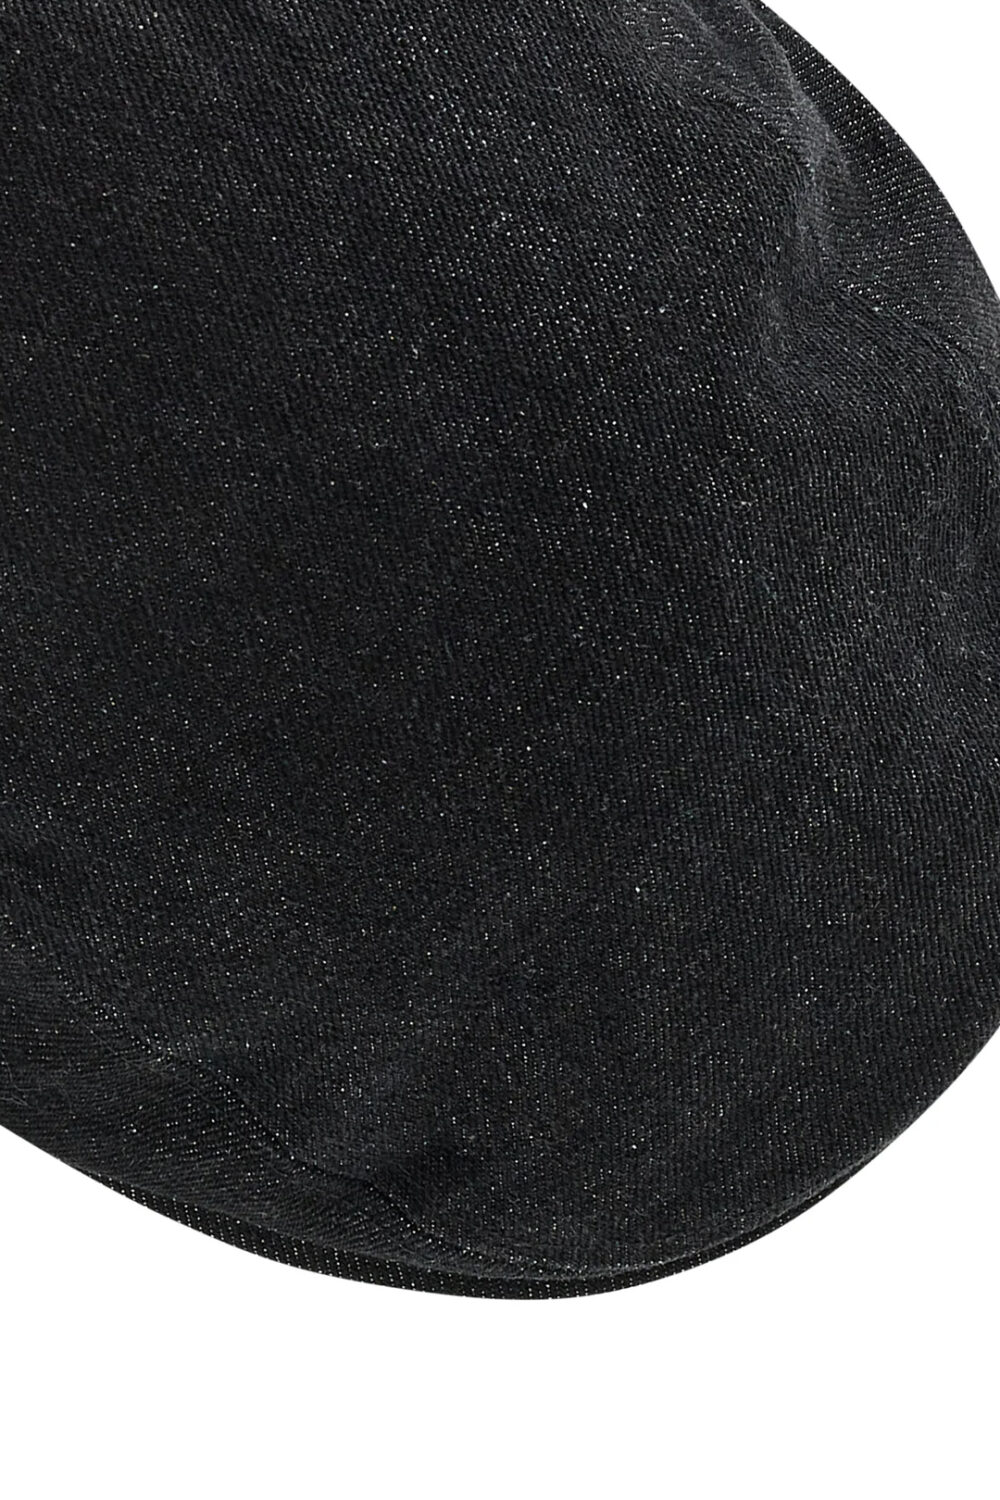 Cappello con visiera Levi's® DENIM DRIVER Black Jeans - Foto 2